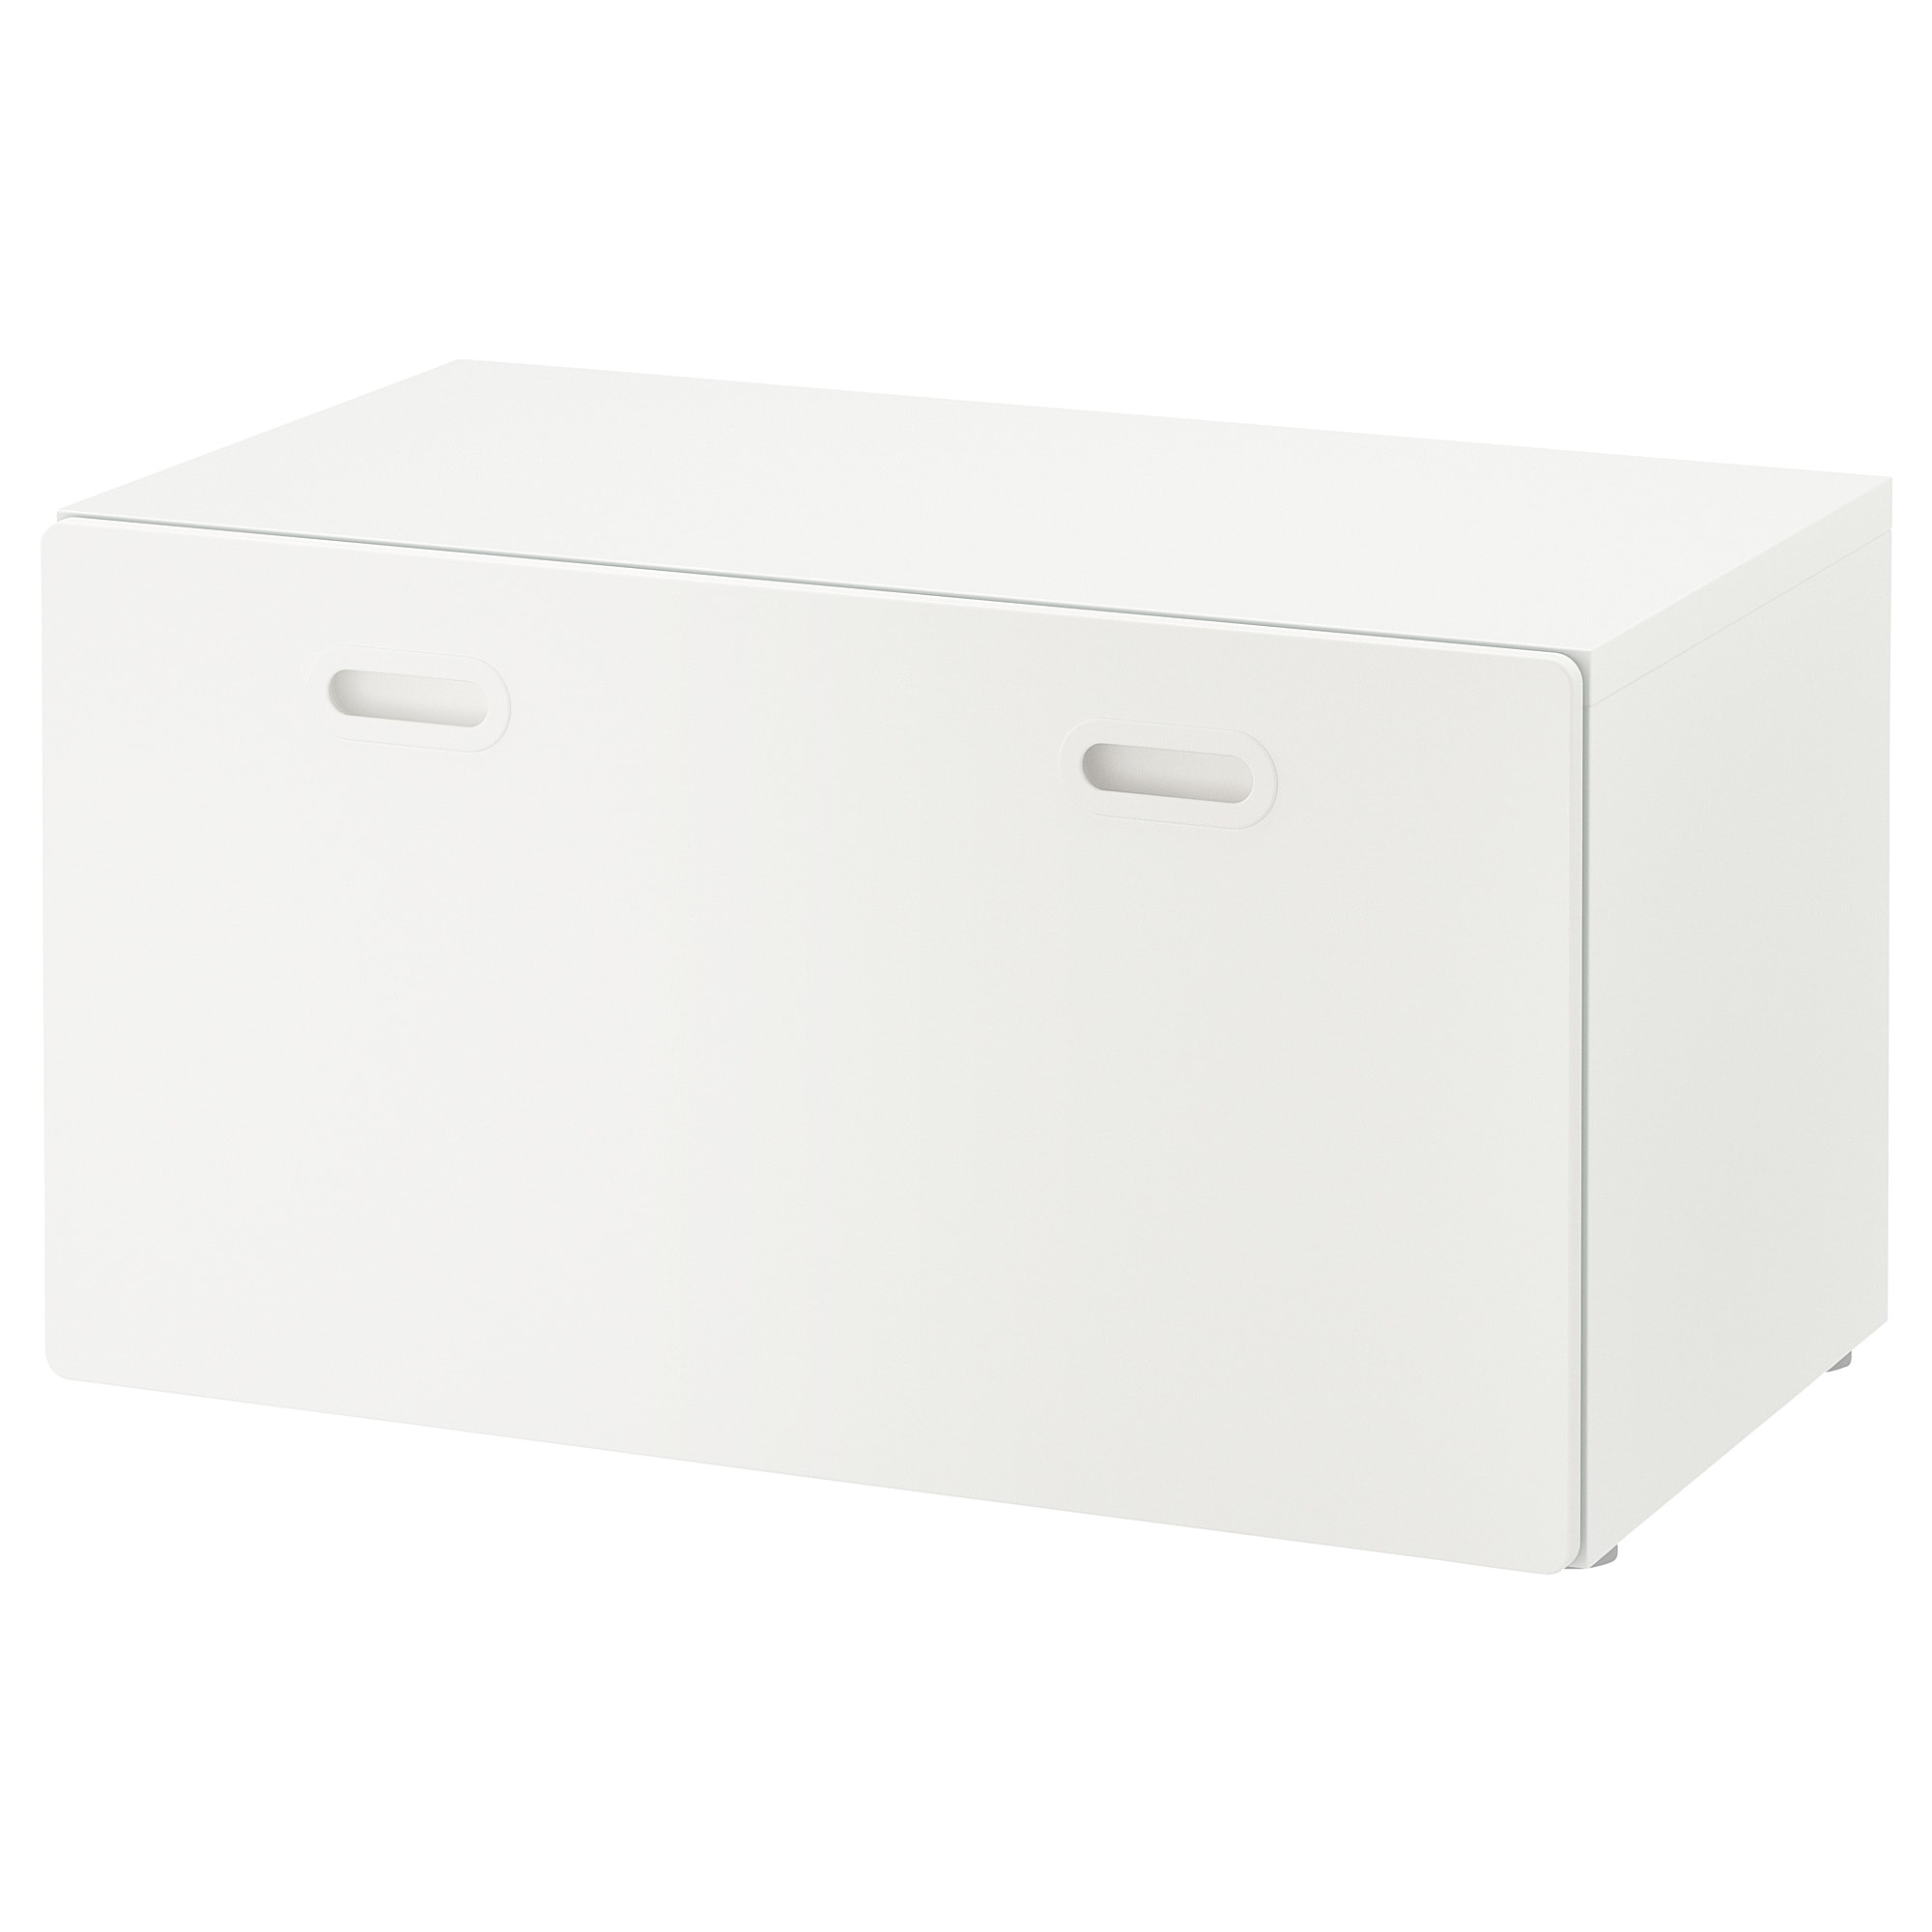 SMÅSTAD Banc avec rangement jouets, blanc/gris, 90x52x48 cm - IKEA